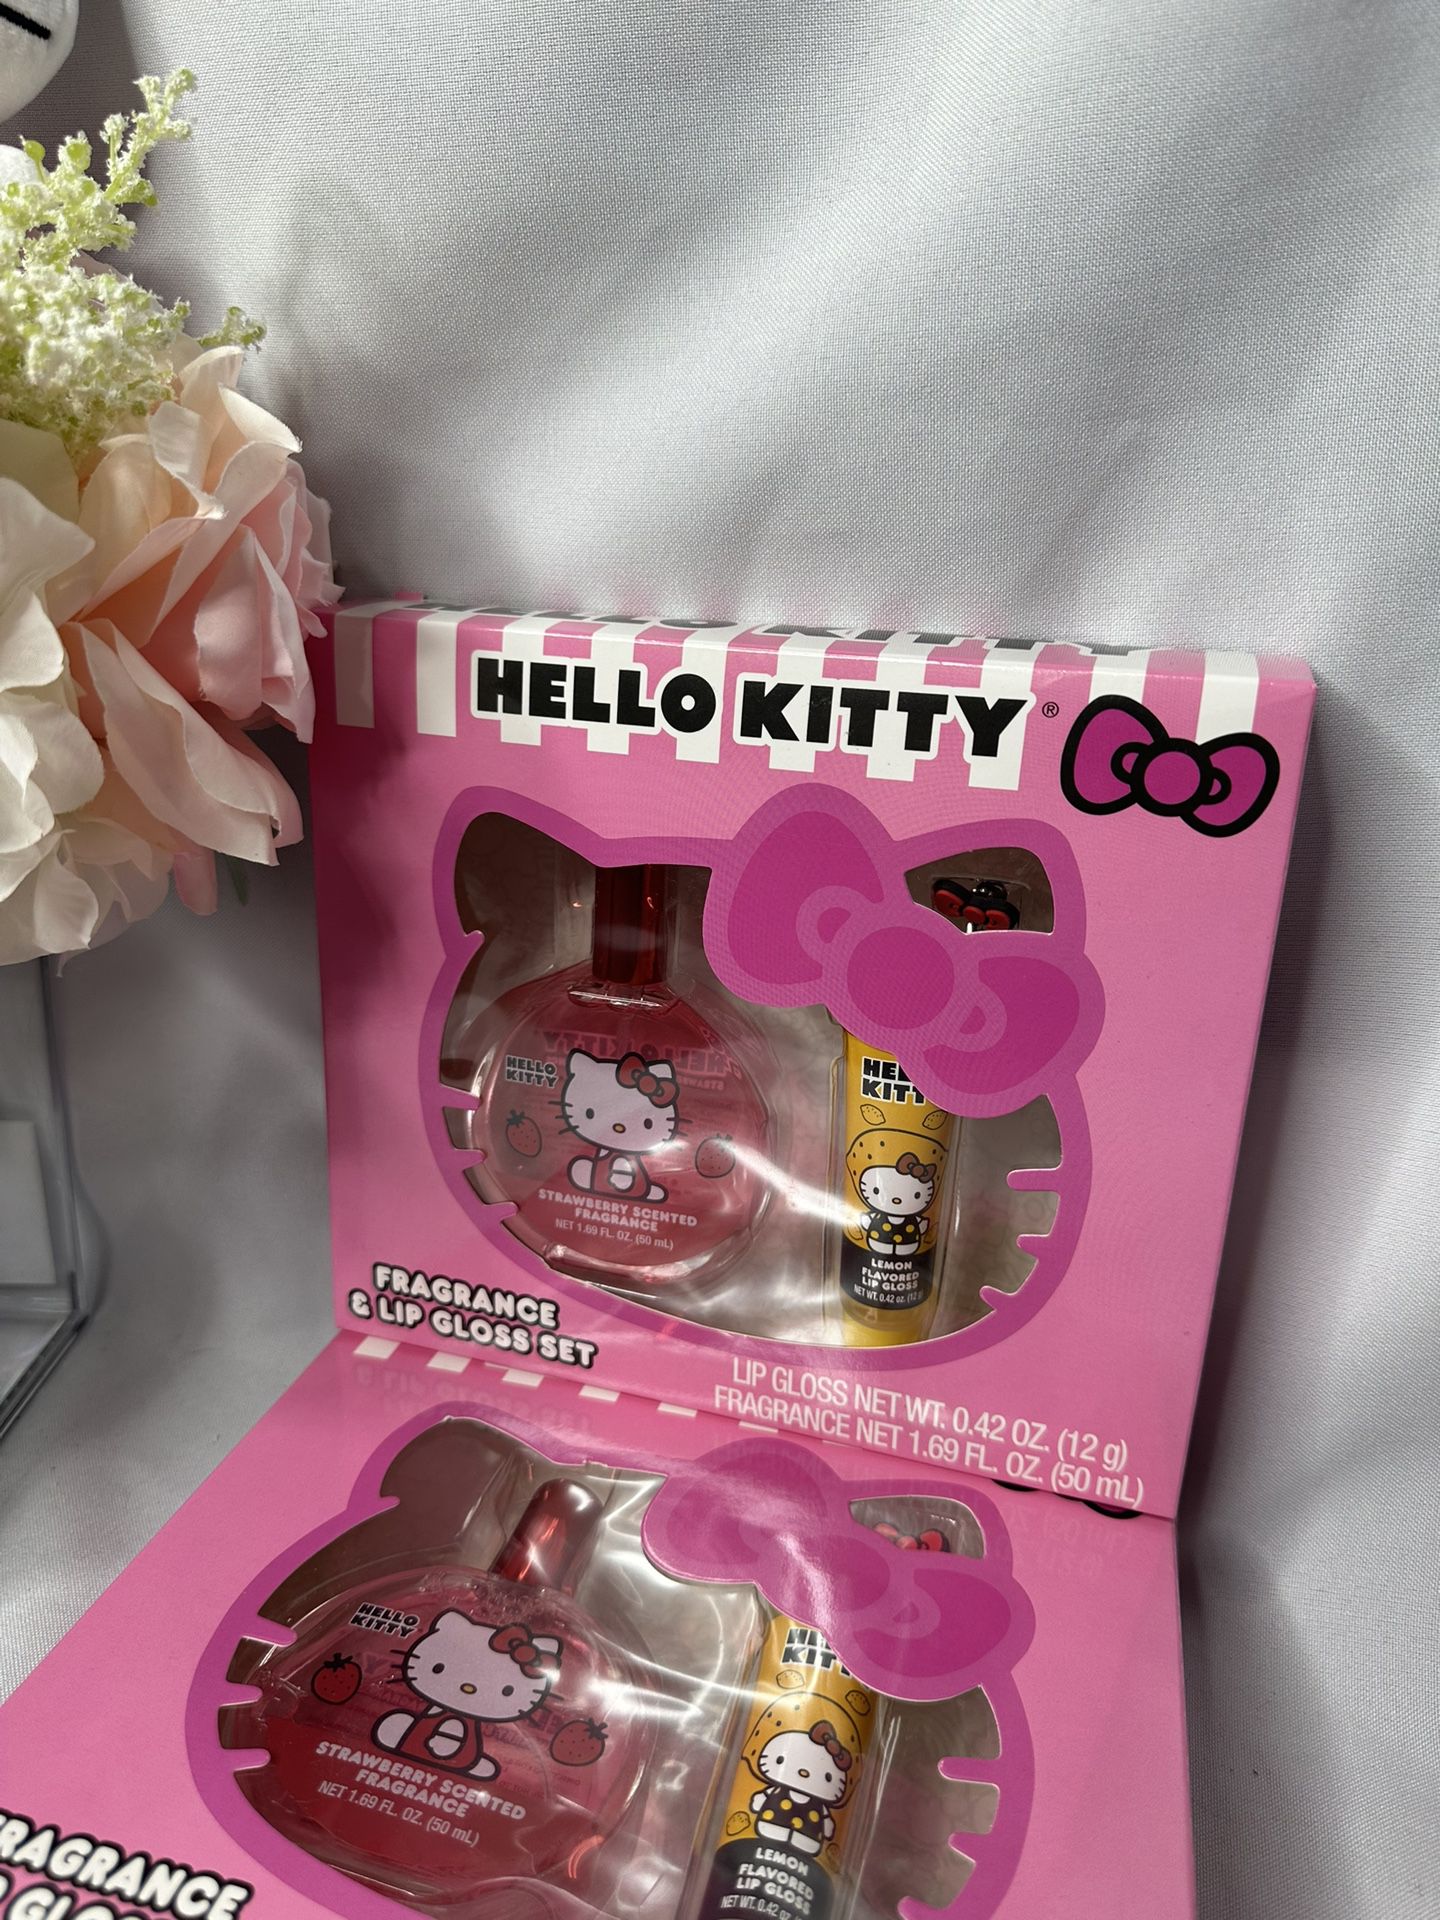 Hello kitty fragrance + lipgloss set $10 each 